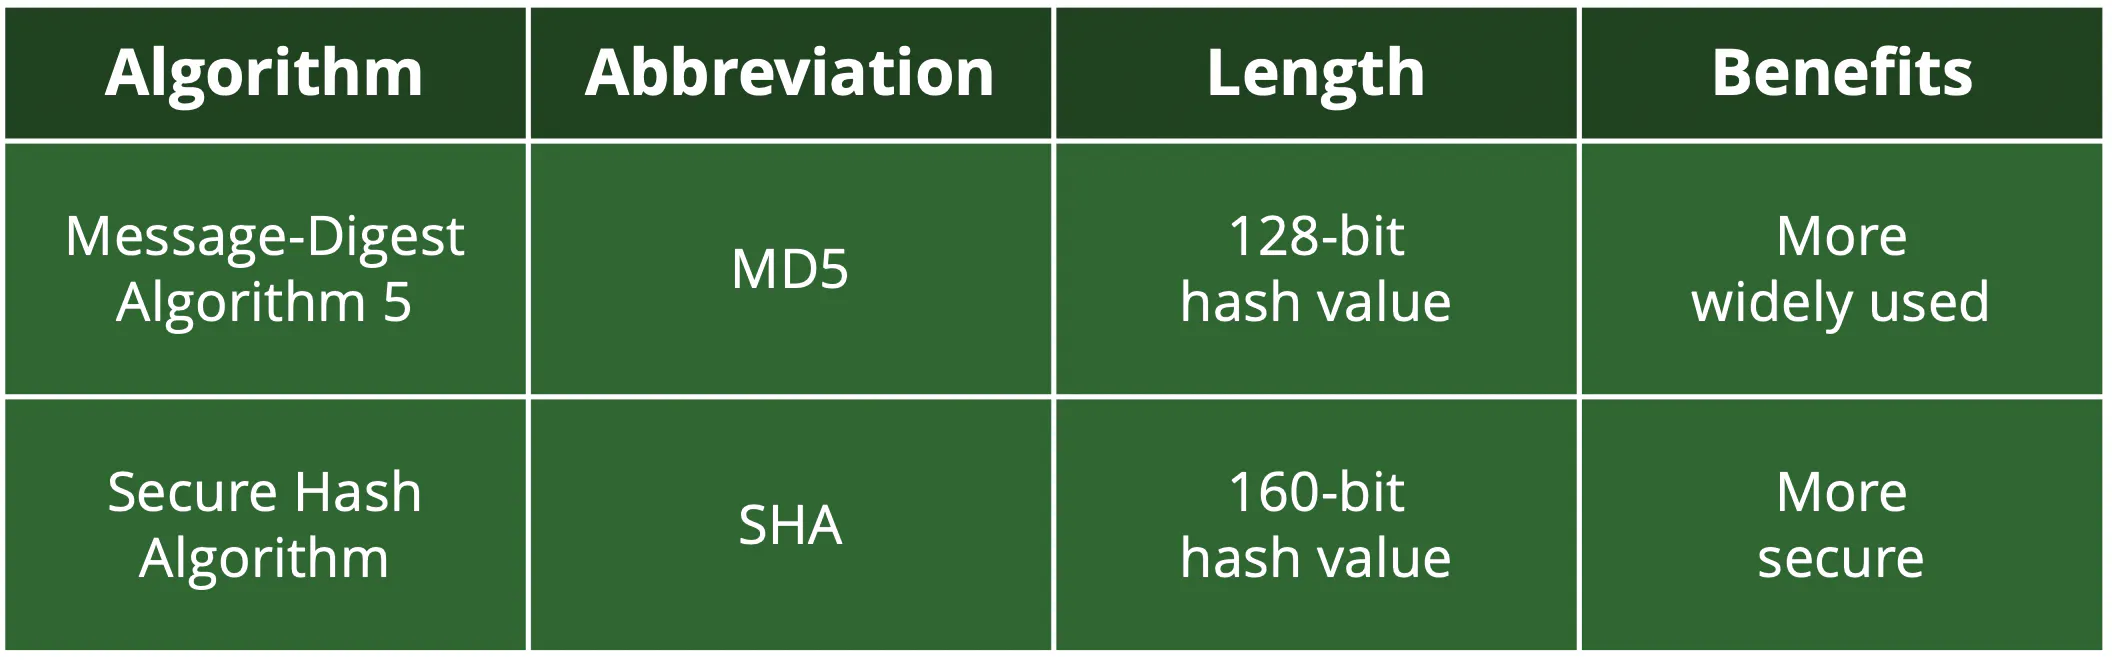 ハッシュ化されたアルゴリズムにはMD5とSHAの2種類がありますが、前者はより広く使われており、後者はより安全です。